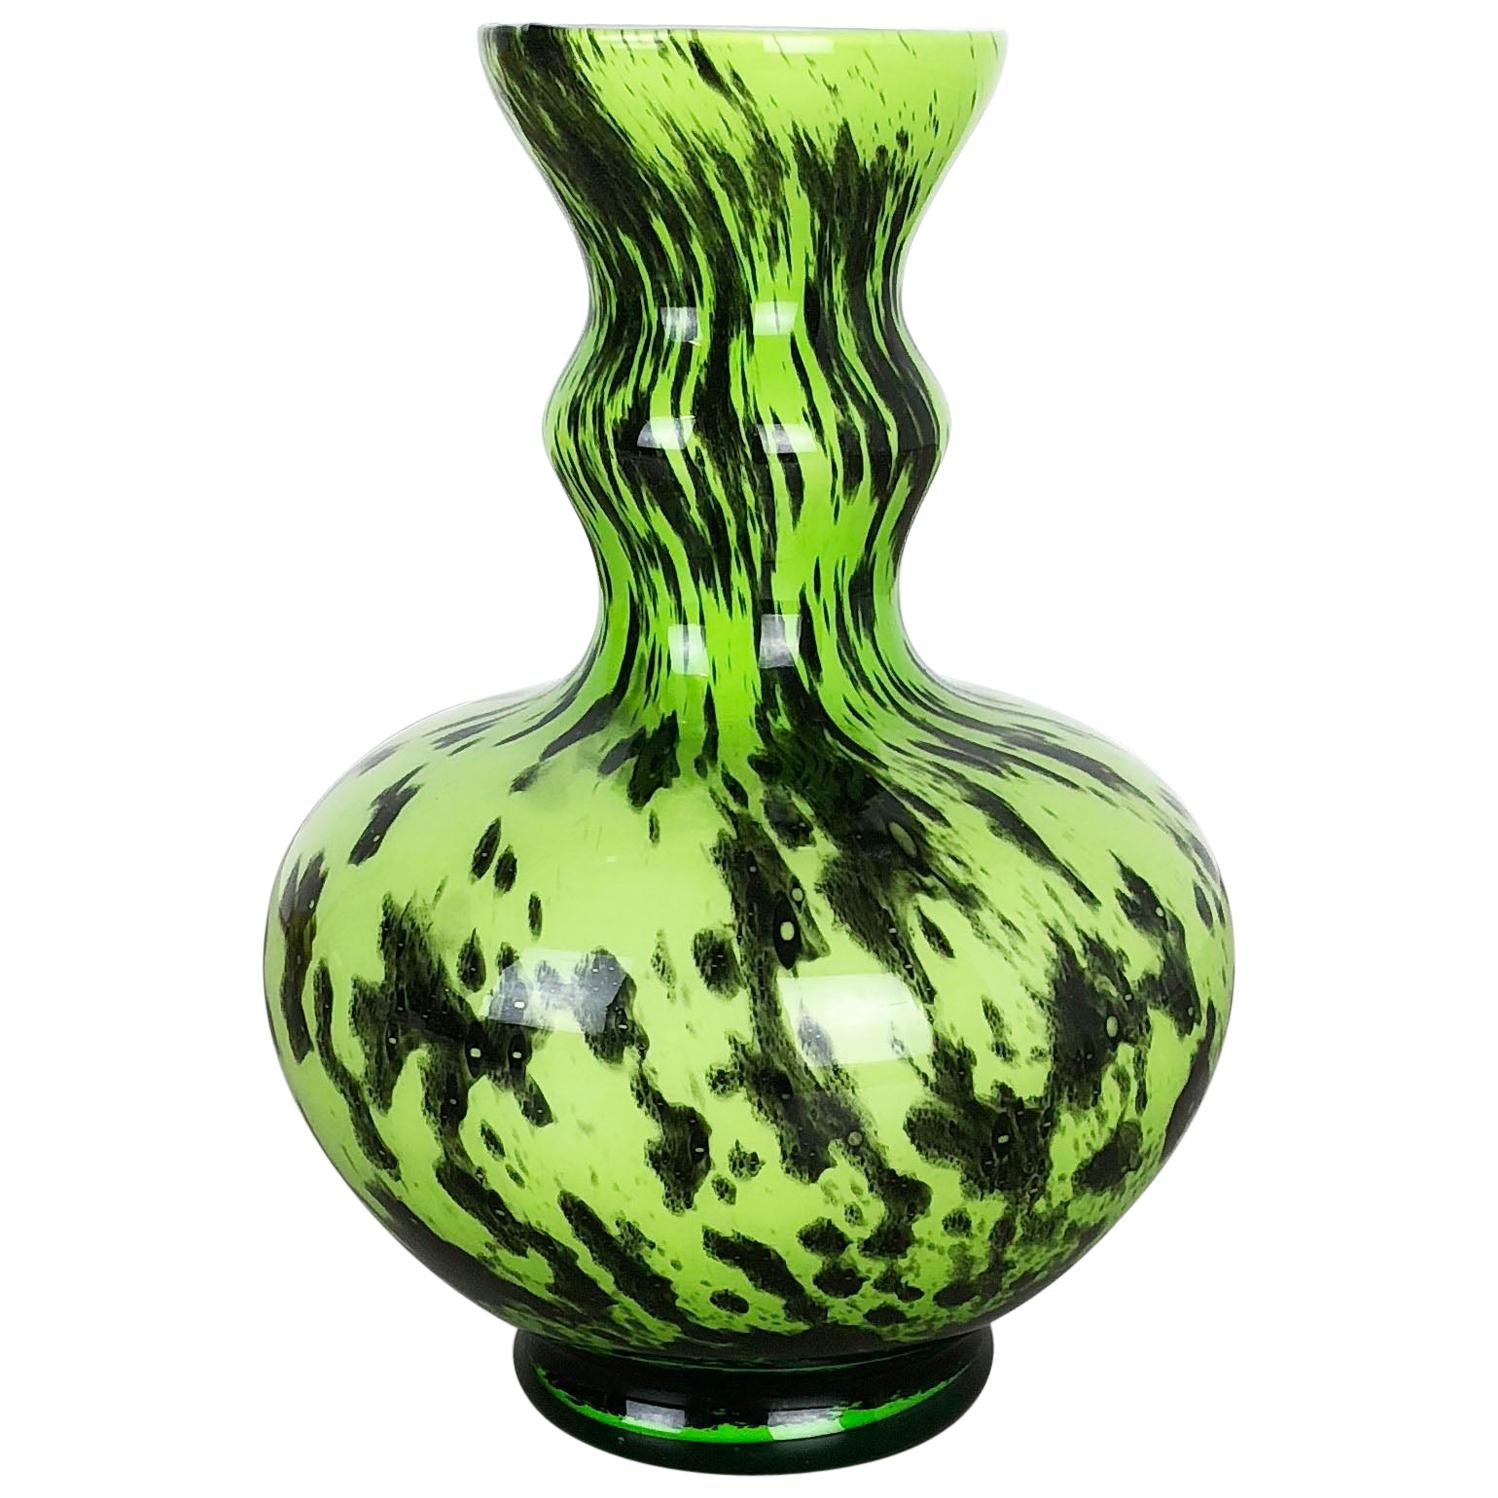 Large Green Vintage Pop Art Opaline Florence Vase Design, Italy